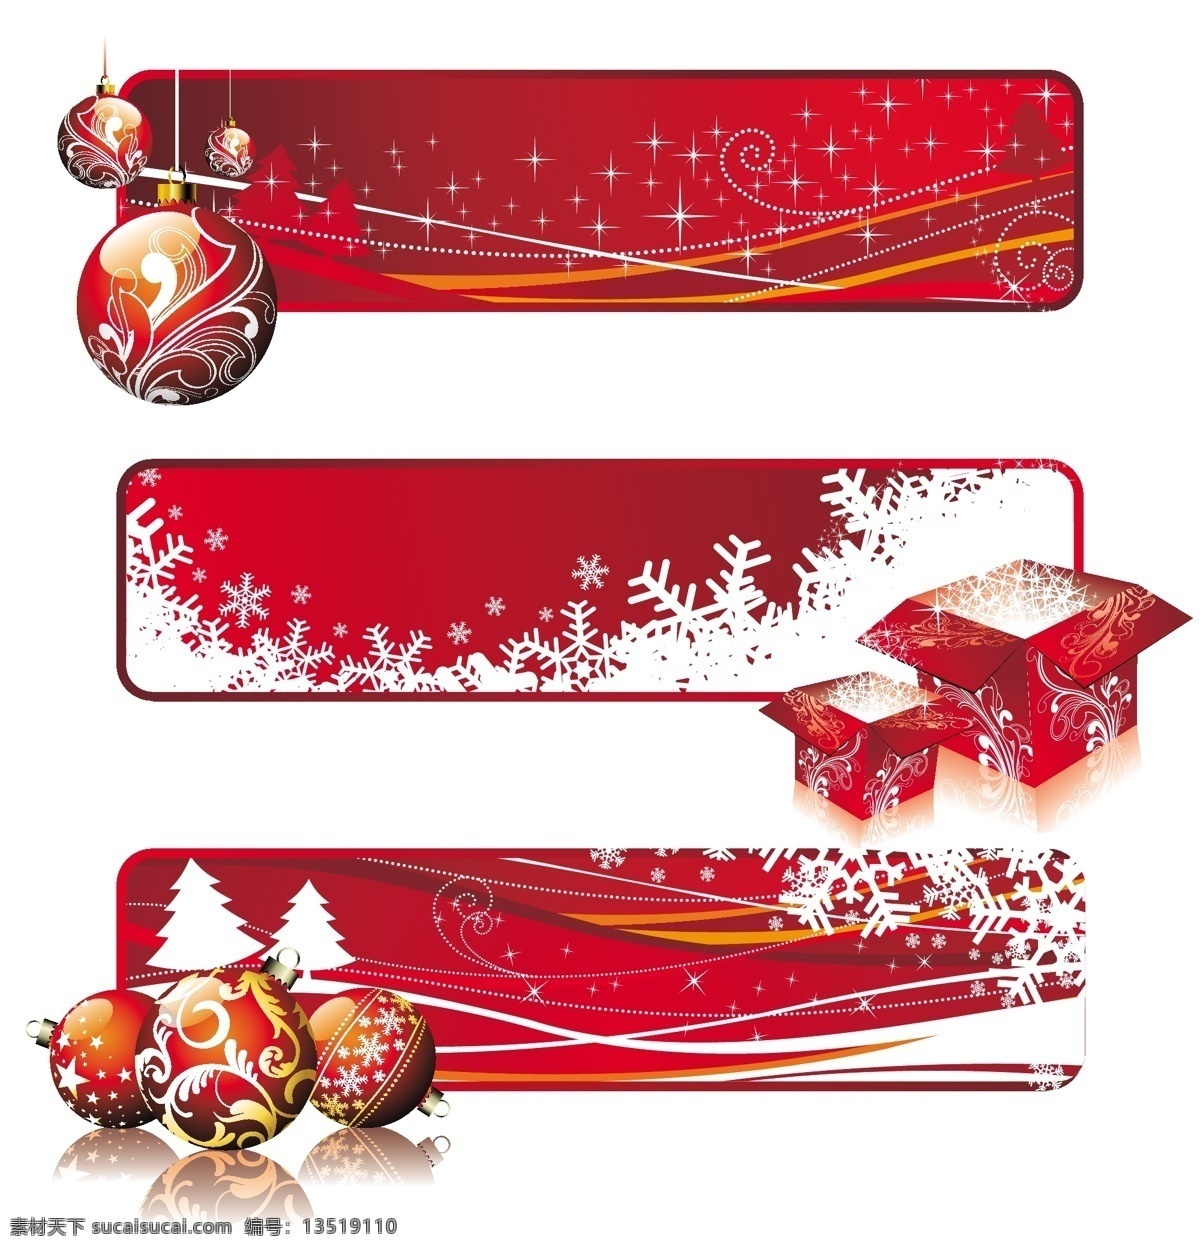 圣诞节 红色 主题 banner 矢量 彩球 节日 礼品盒 圣诞 圣诞树 雪花 植物花纹 装饰球 节日素材